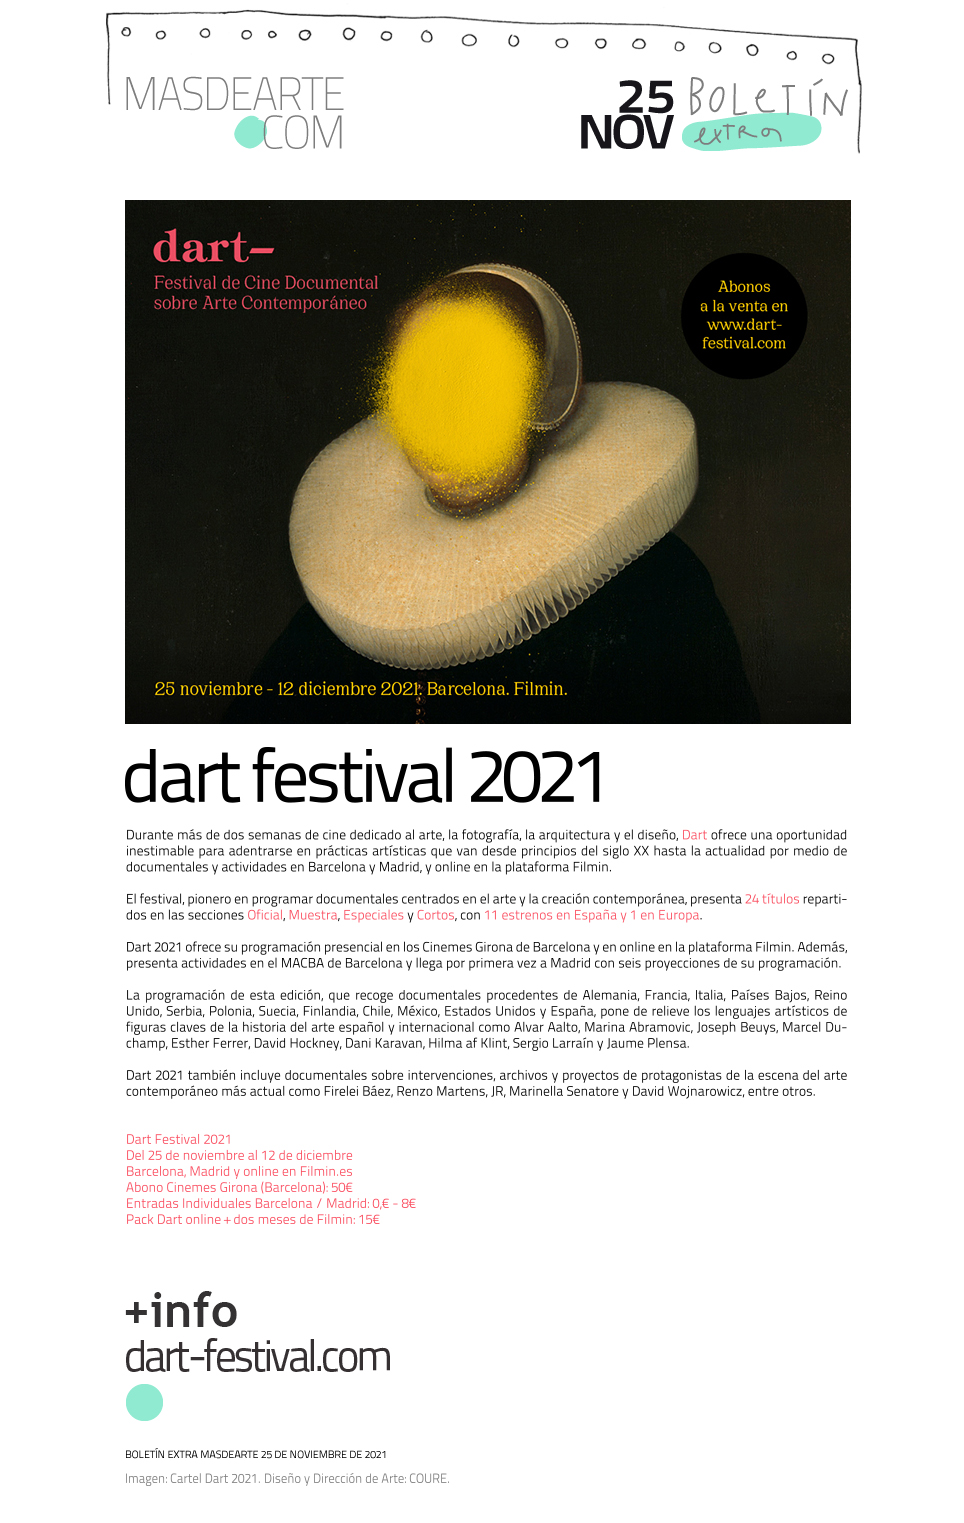 Extra masdearte: Empieza Dart Festival 2021 - Documentales sobre Arte Contemporáneo en cines y online